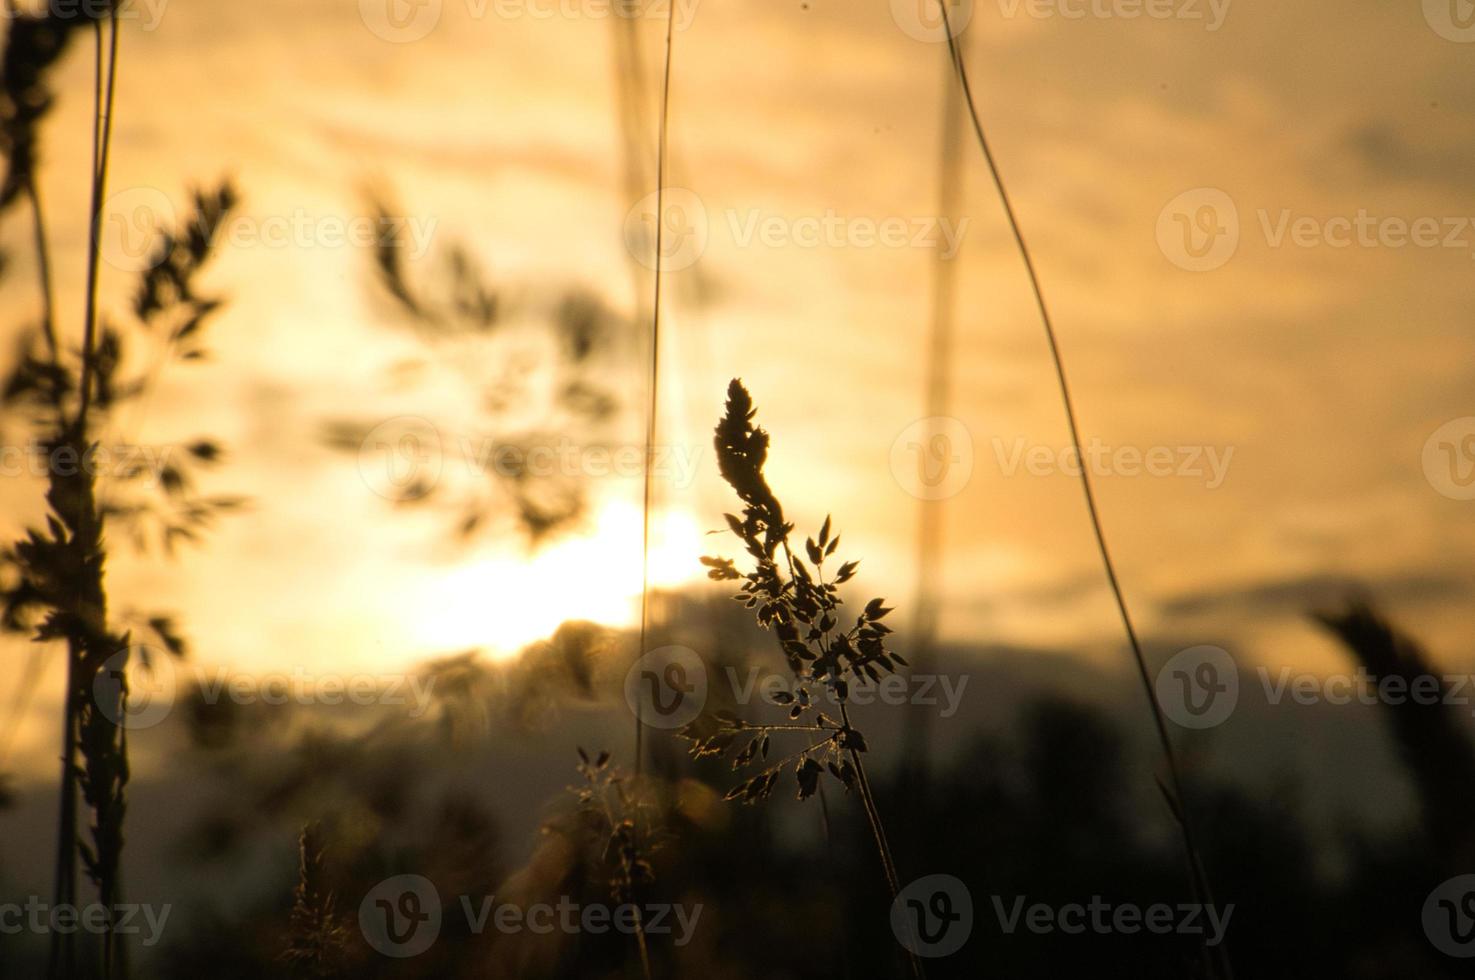 ondergaande zon aan de rand van berlijn. planten als silhouet op de voorgrond. foto